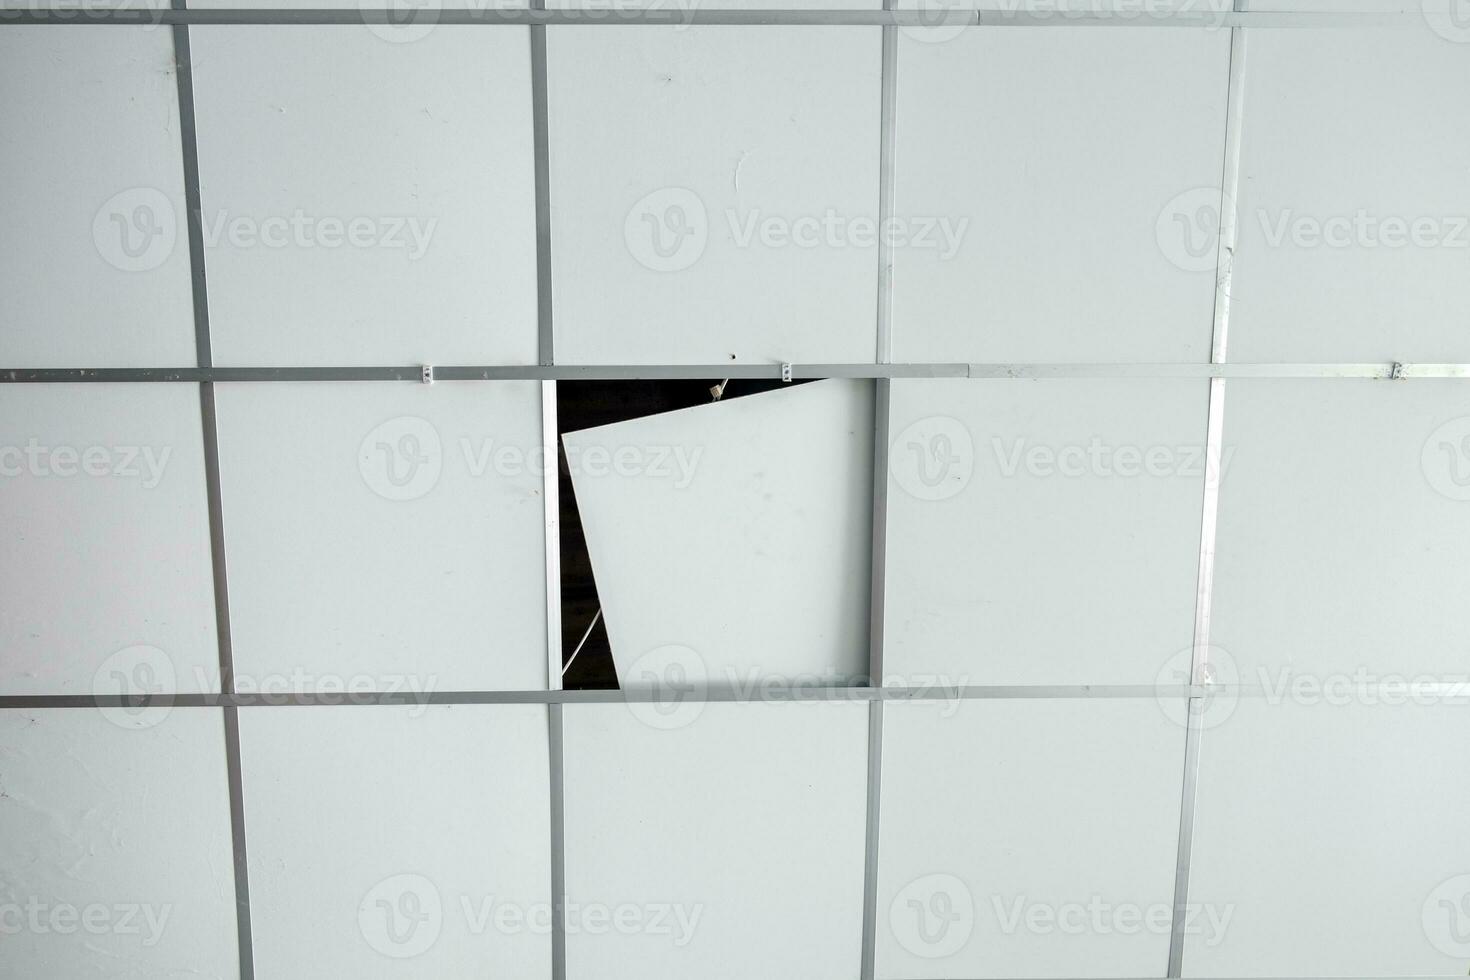 tetos branco quadrado aberto foto